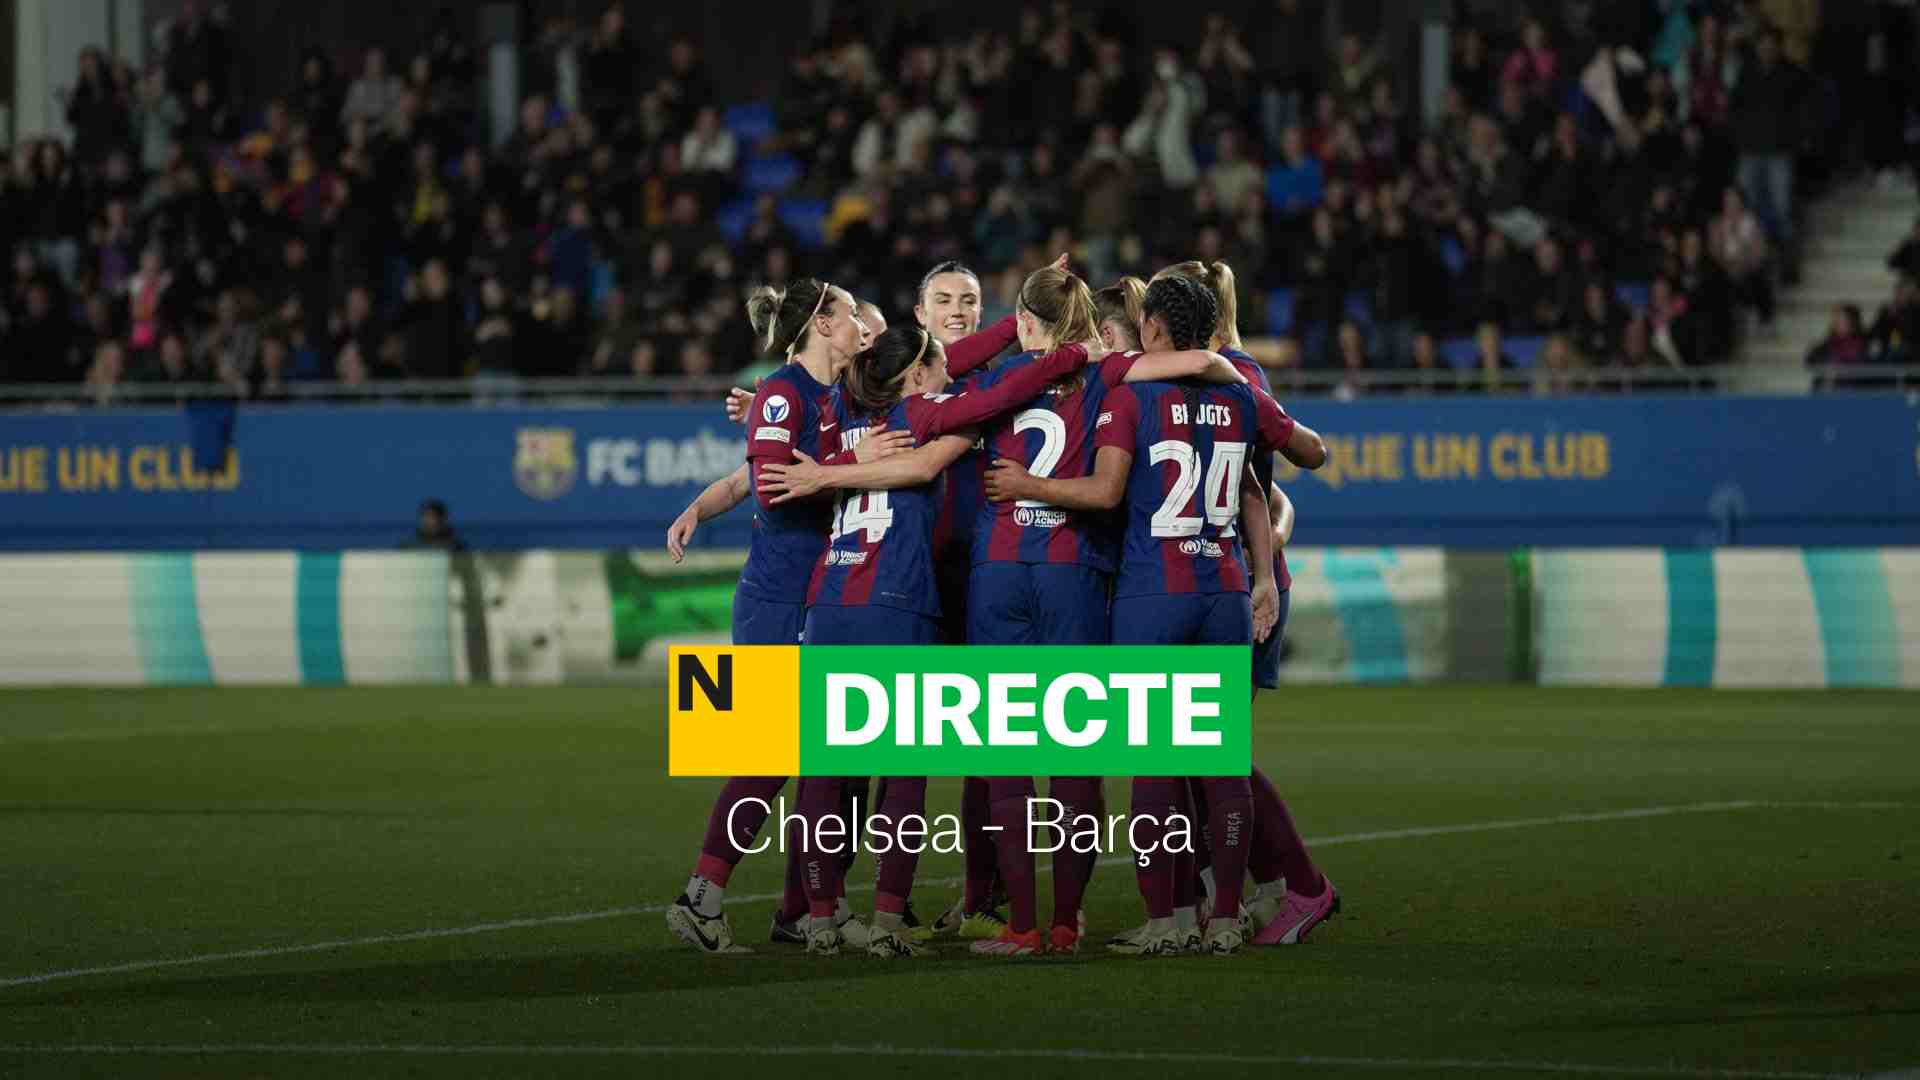 Chelsea - Barça de la Champions League femenina, DIRECTE | Resultat, resum i gols